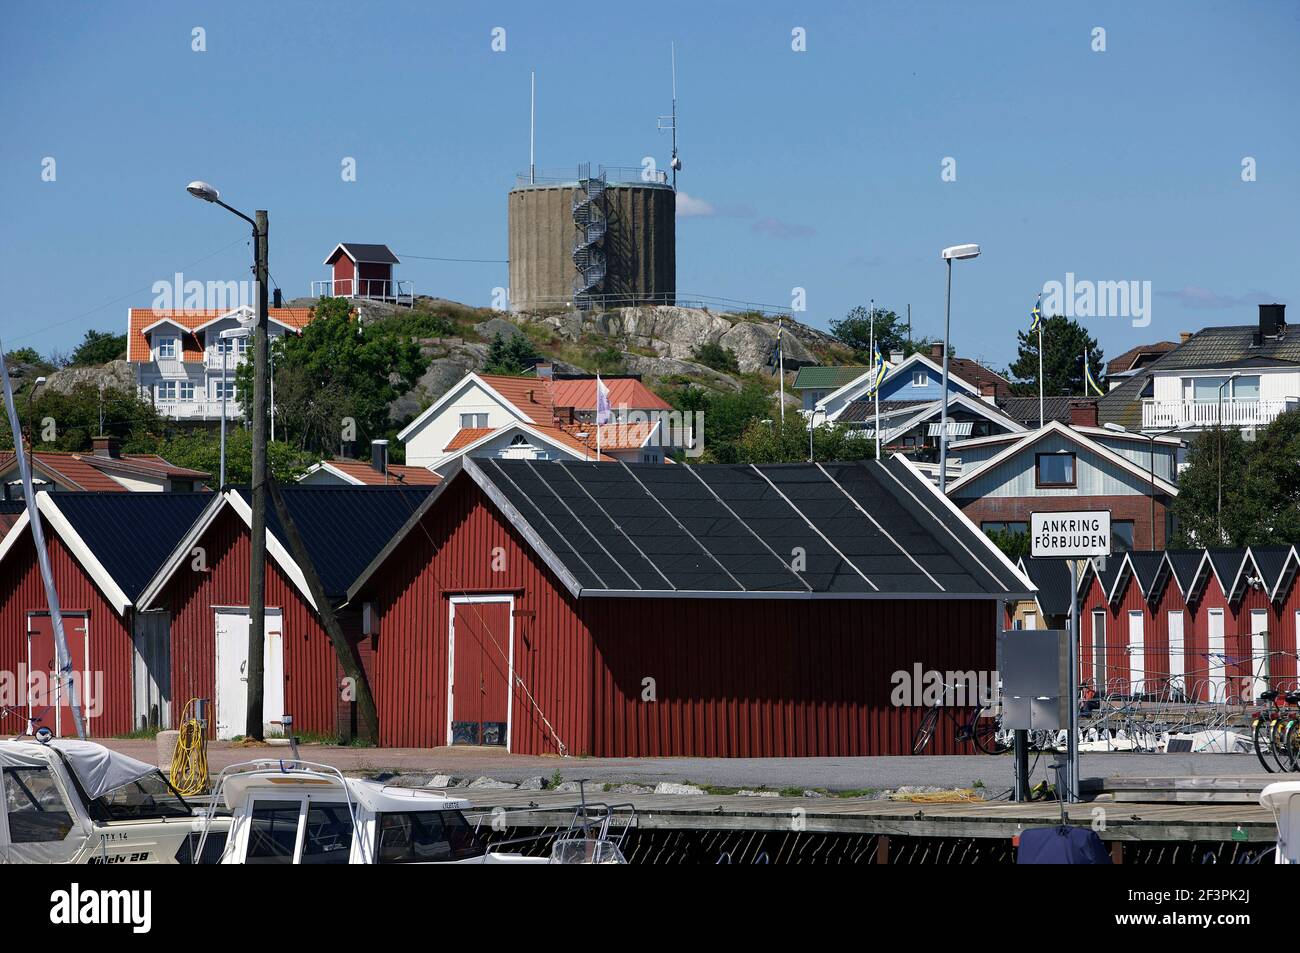 Hoenoe, Sweden Stock Photo